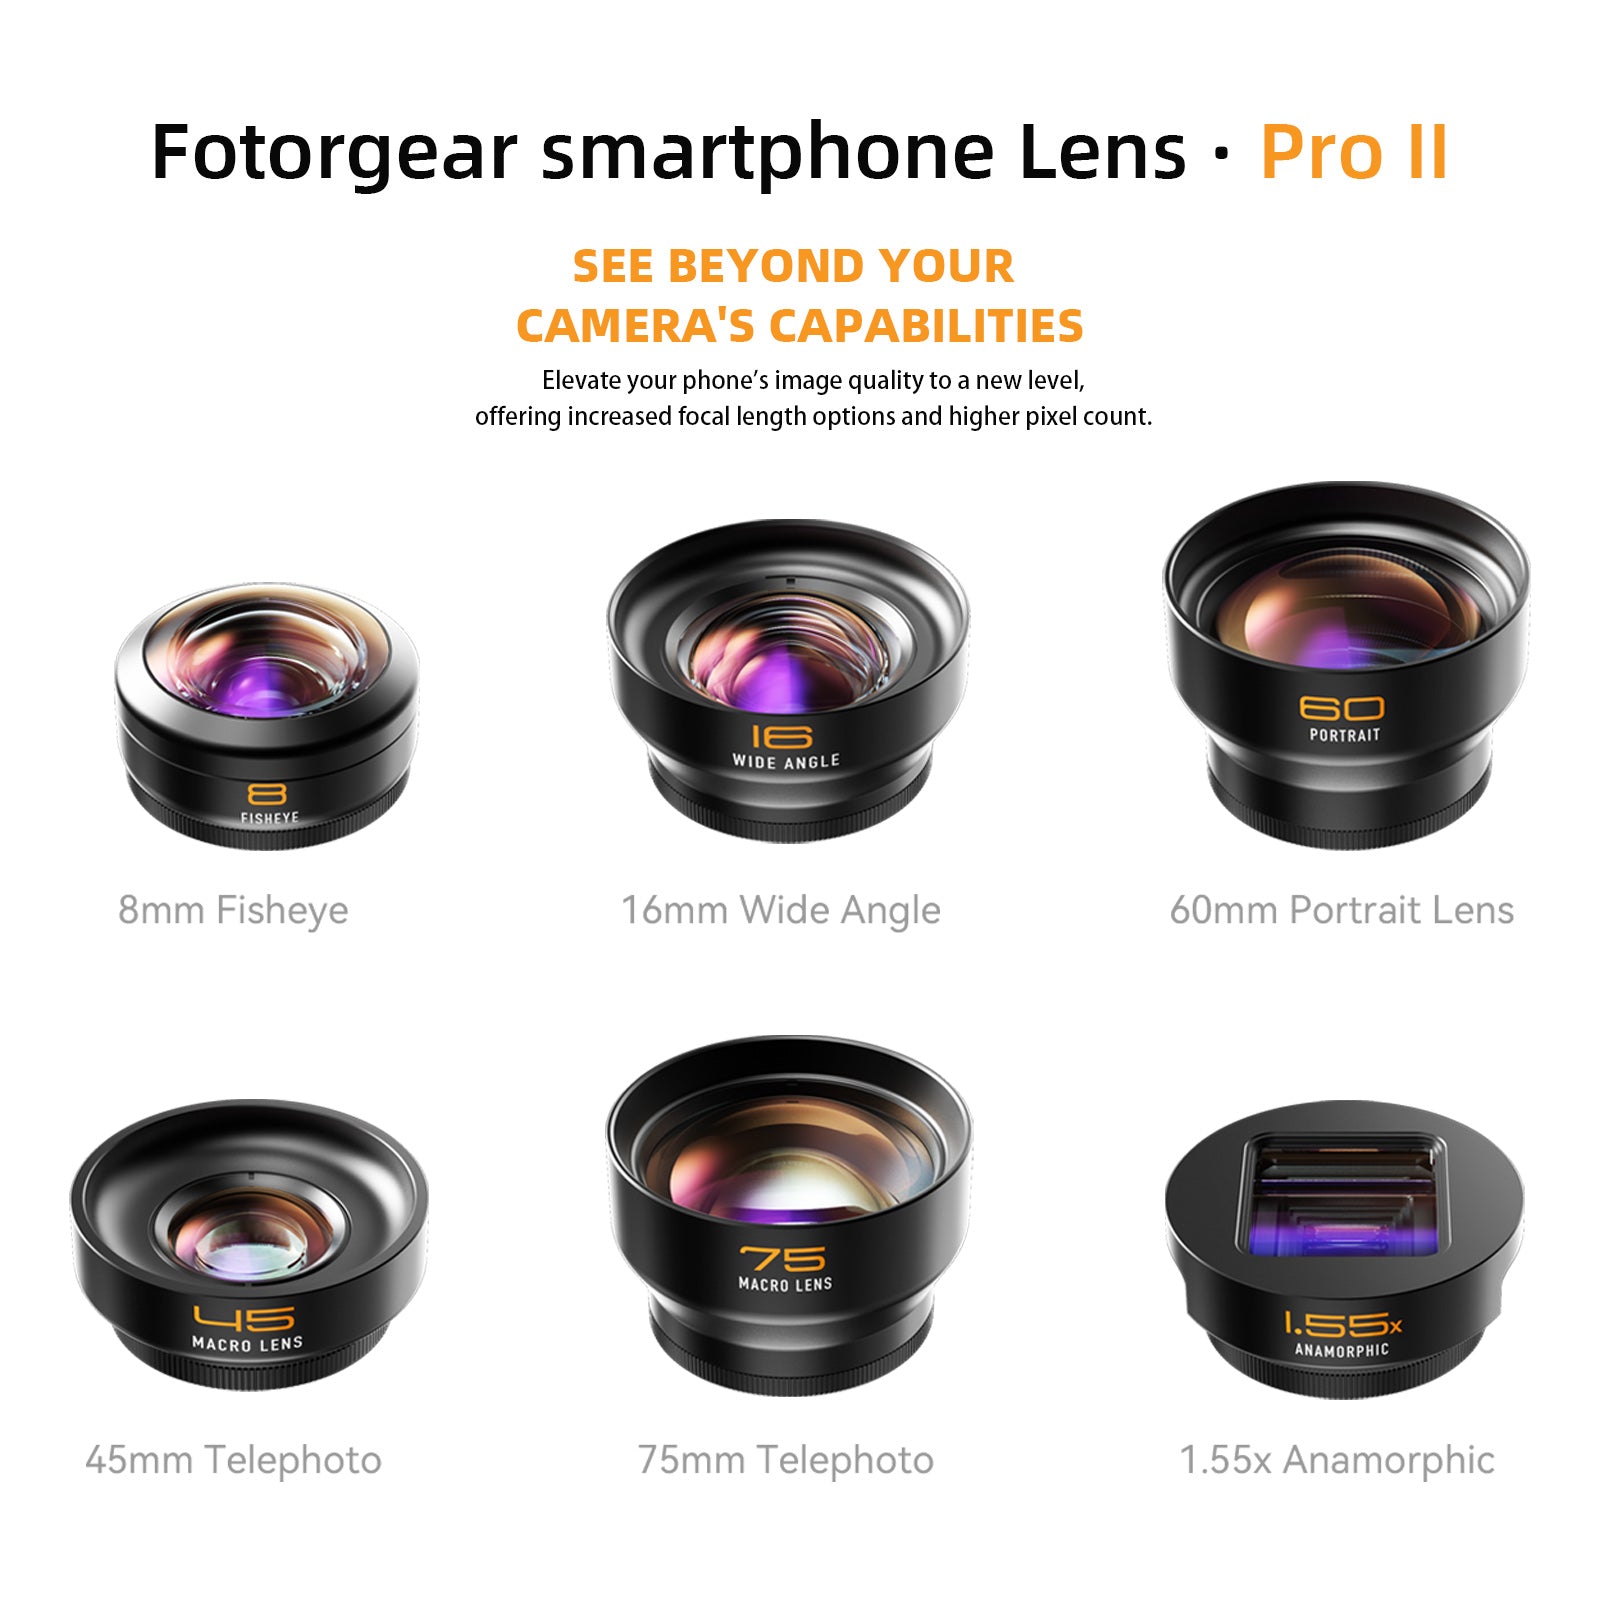 fotorgear 60mm Portrait Lens · Pro II series